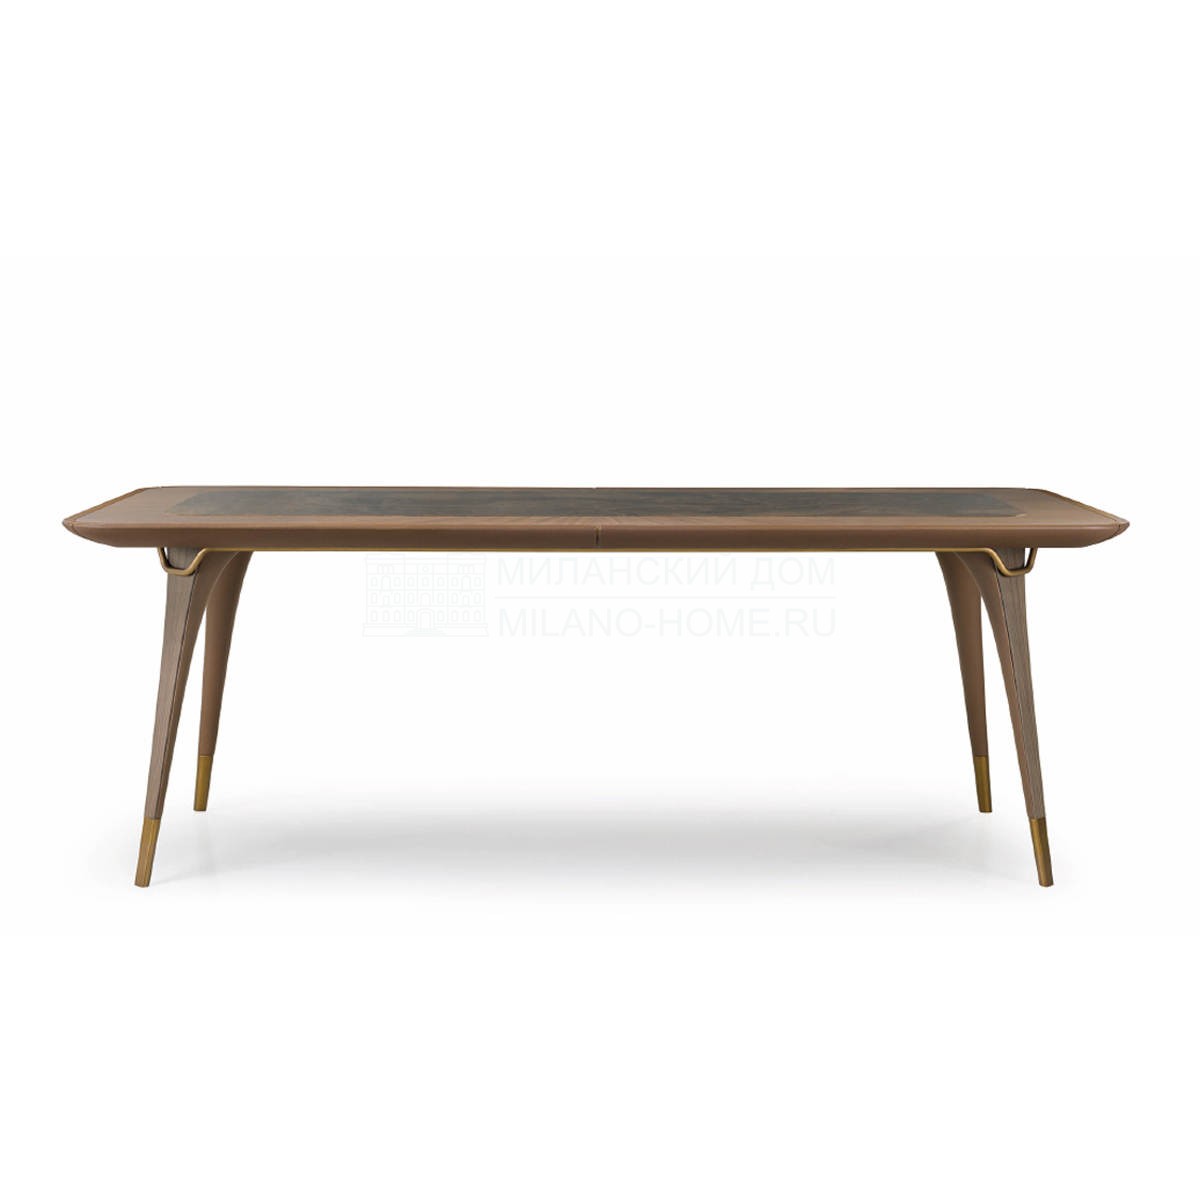 Обеденный стол Melting Light rectangular table из Италии фабрики TURRI